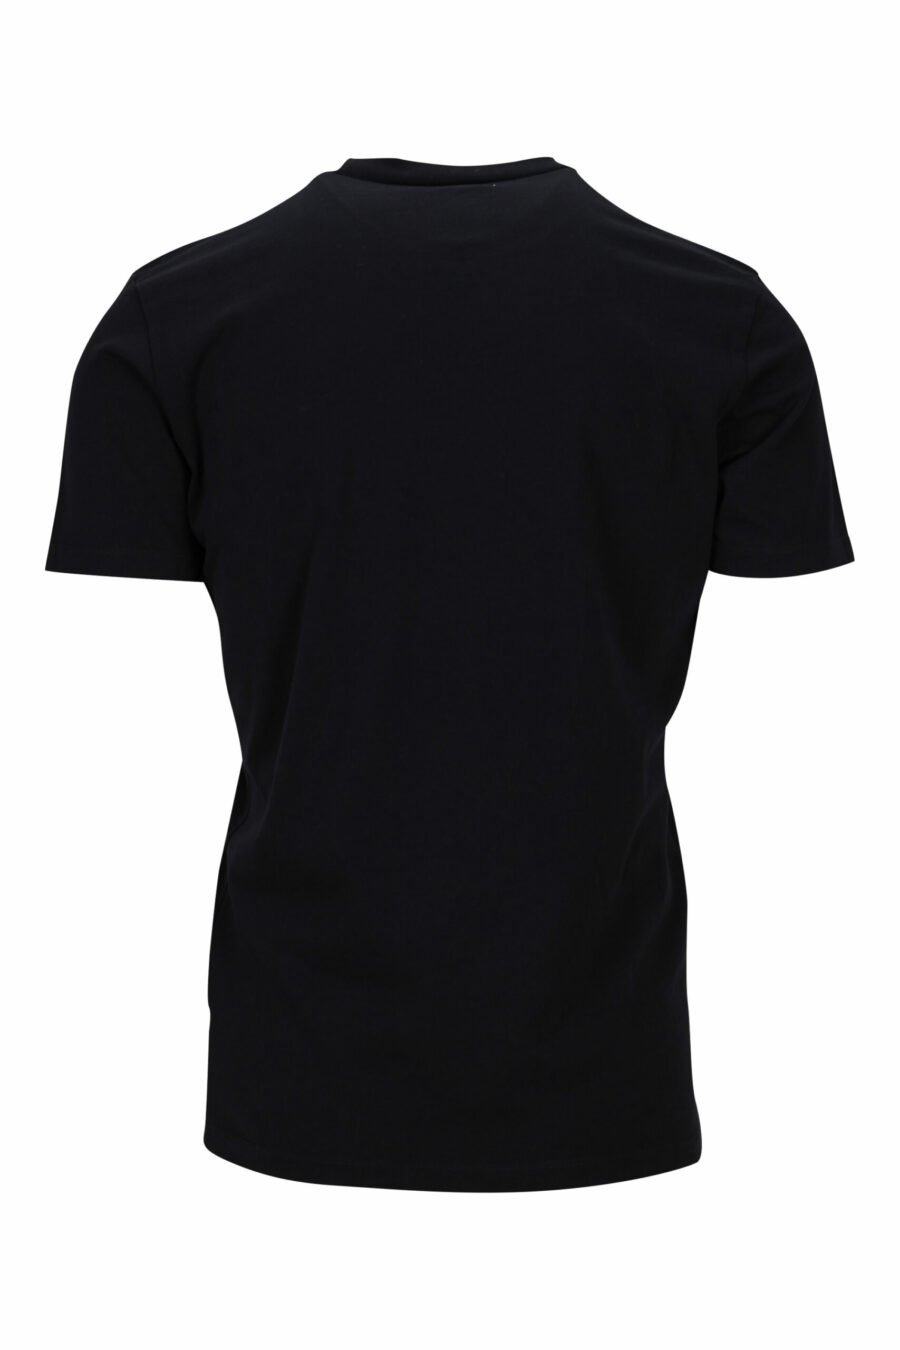 T-shirt preta com maxilogo "collegue league" - 8054148504700 1 scaled